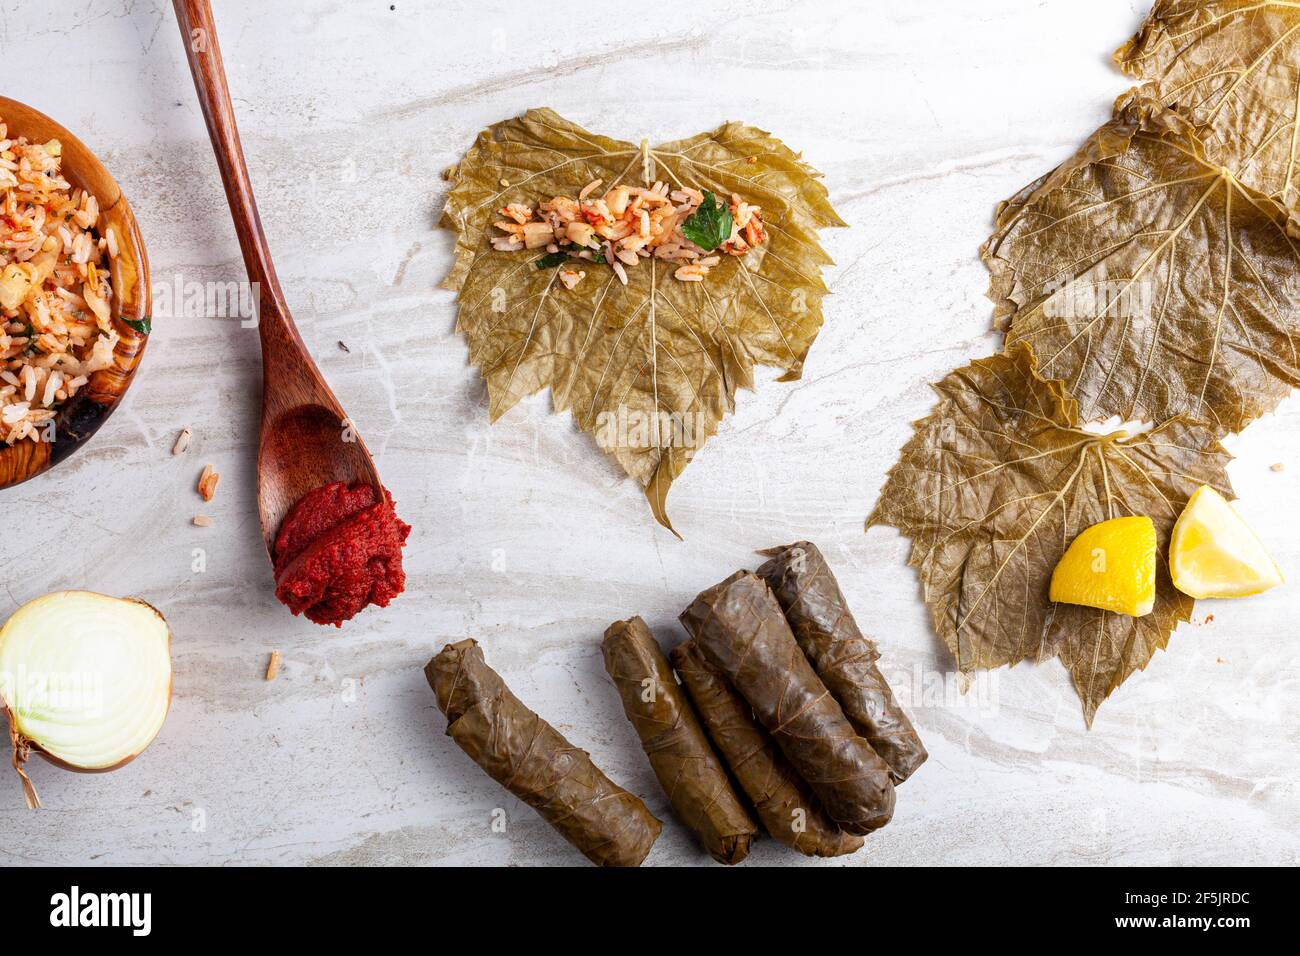 Le Yaprak sarmasi est un plat turc traditionnel fait en enveloppant le farce de riz avec des feuilles de raisin. Image plate montrant les ingrédients pendant la préparation Banque D'Images